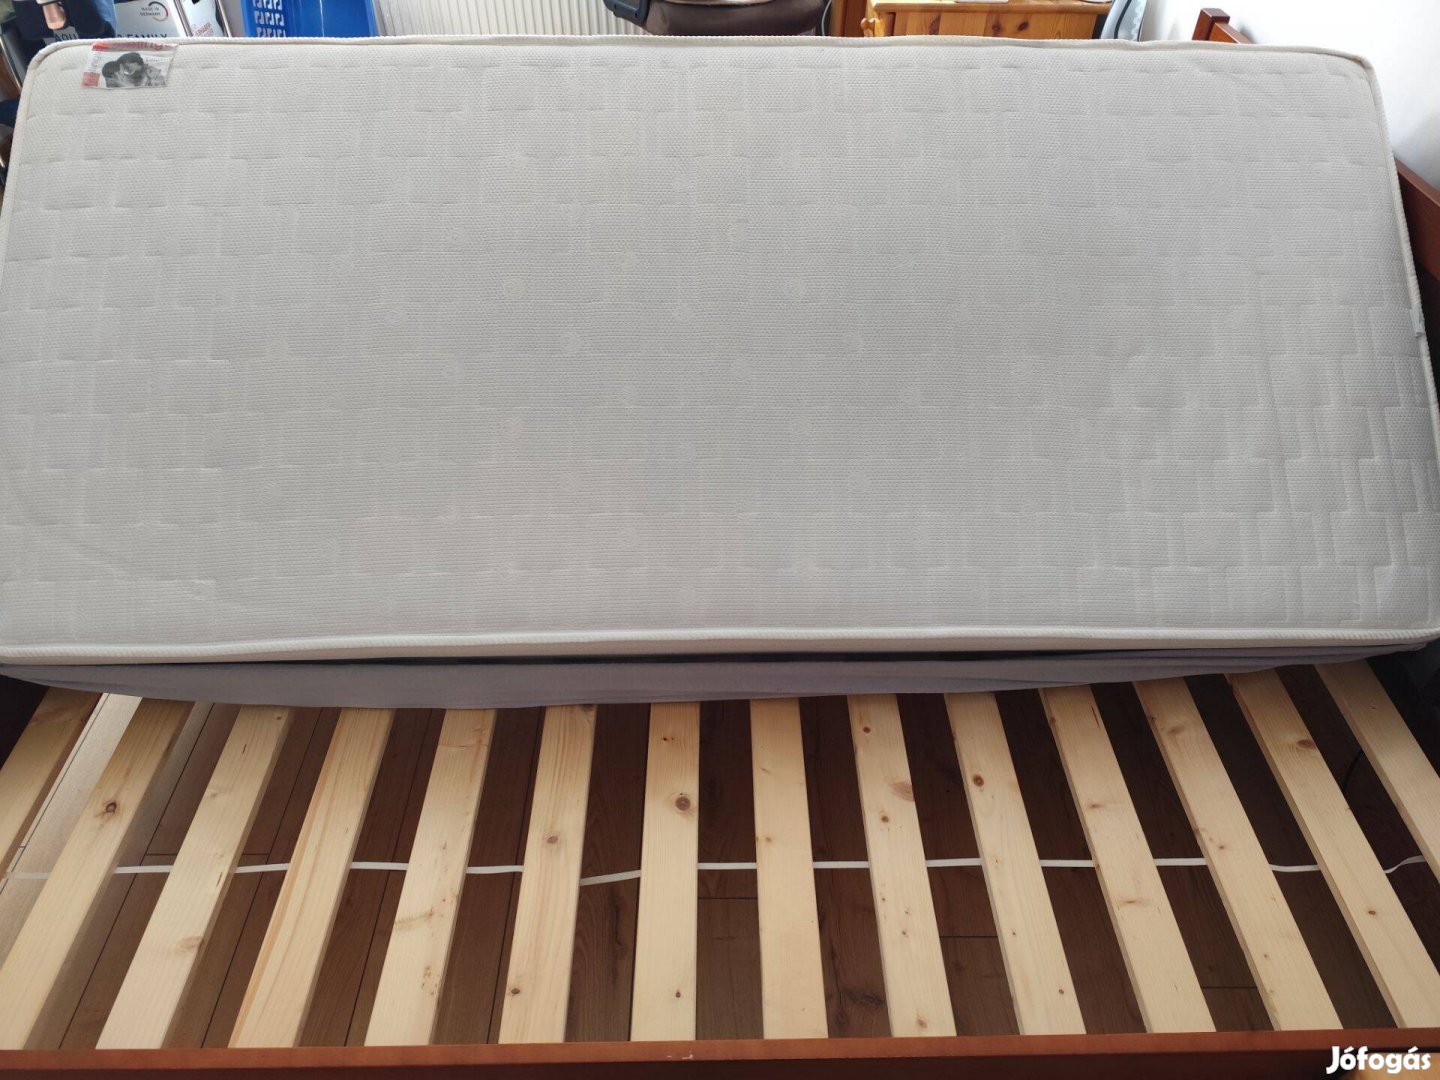 Billerbeck egyedi gyártású matrac